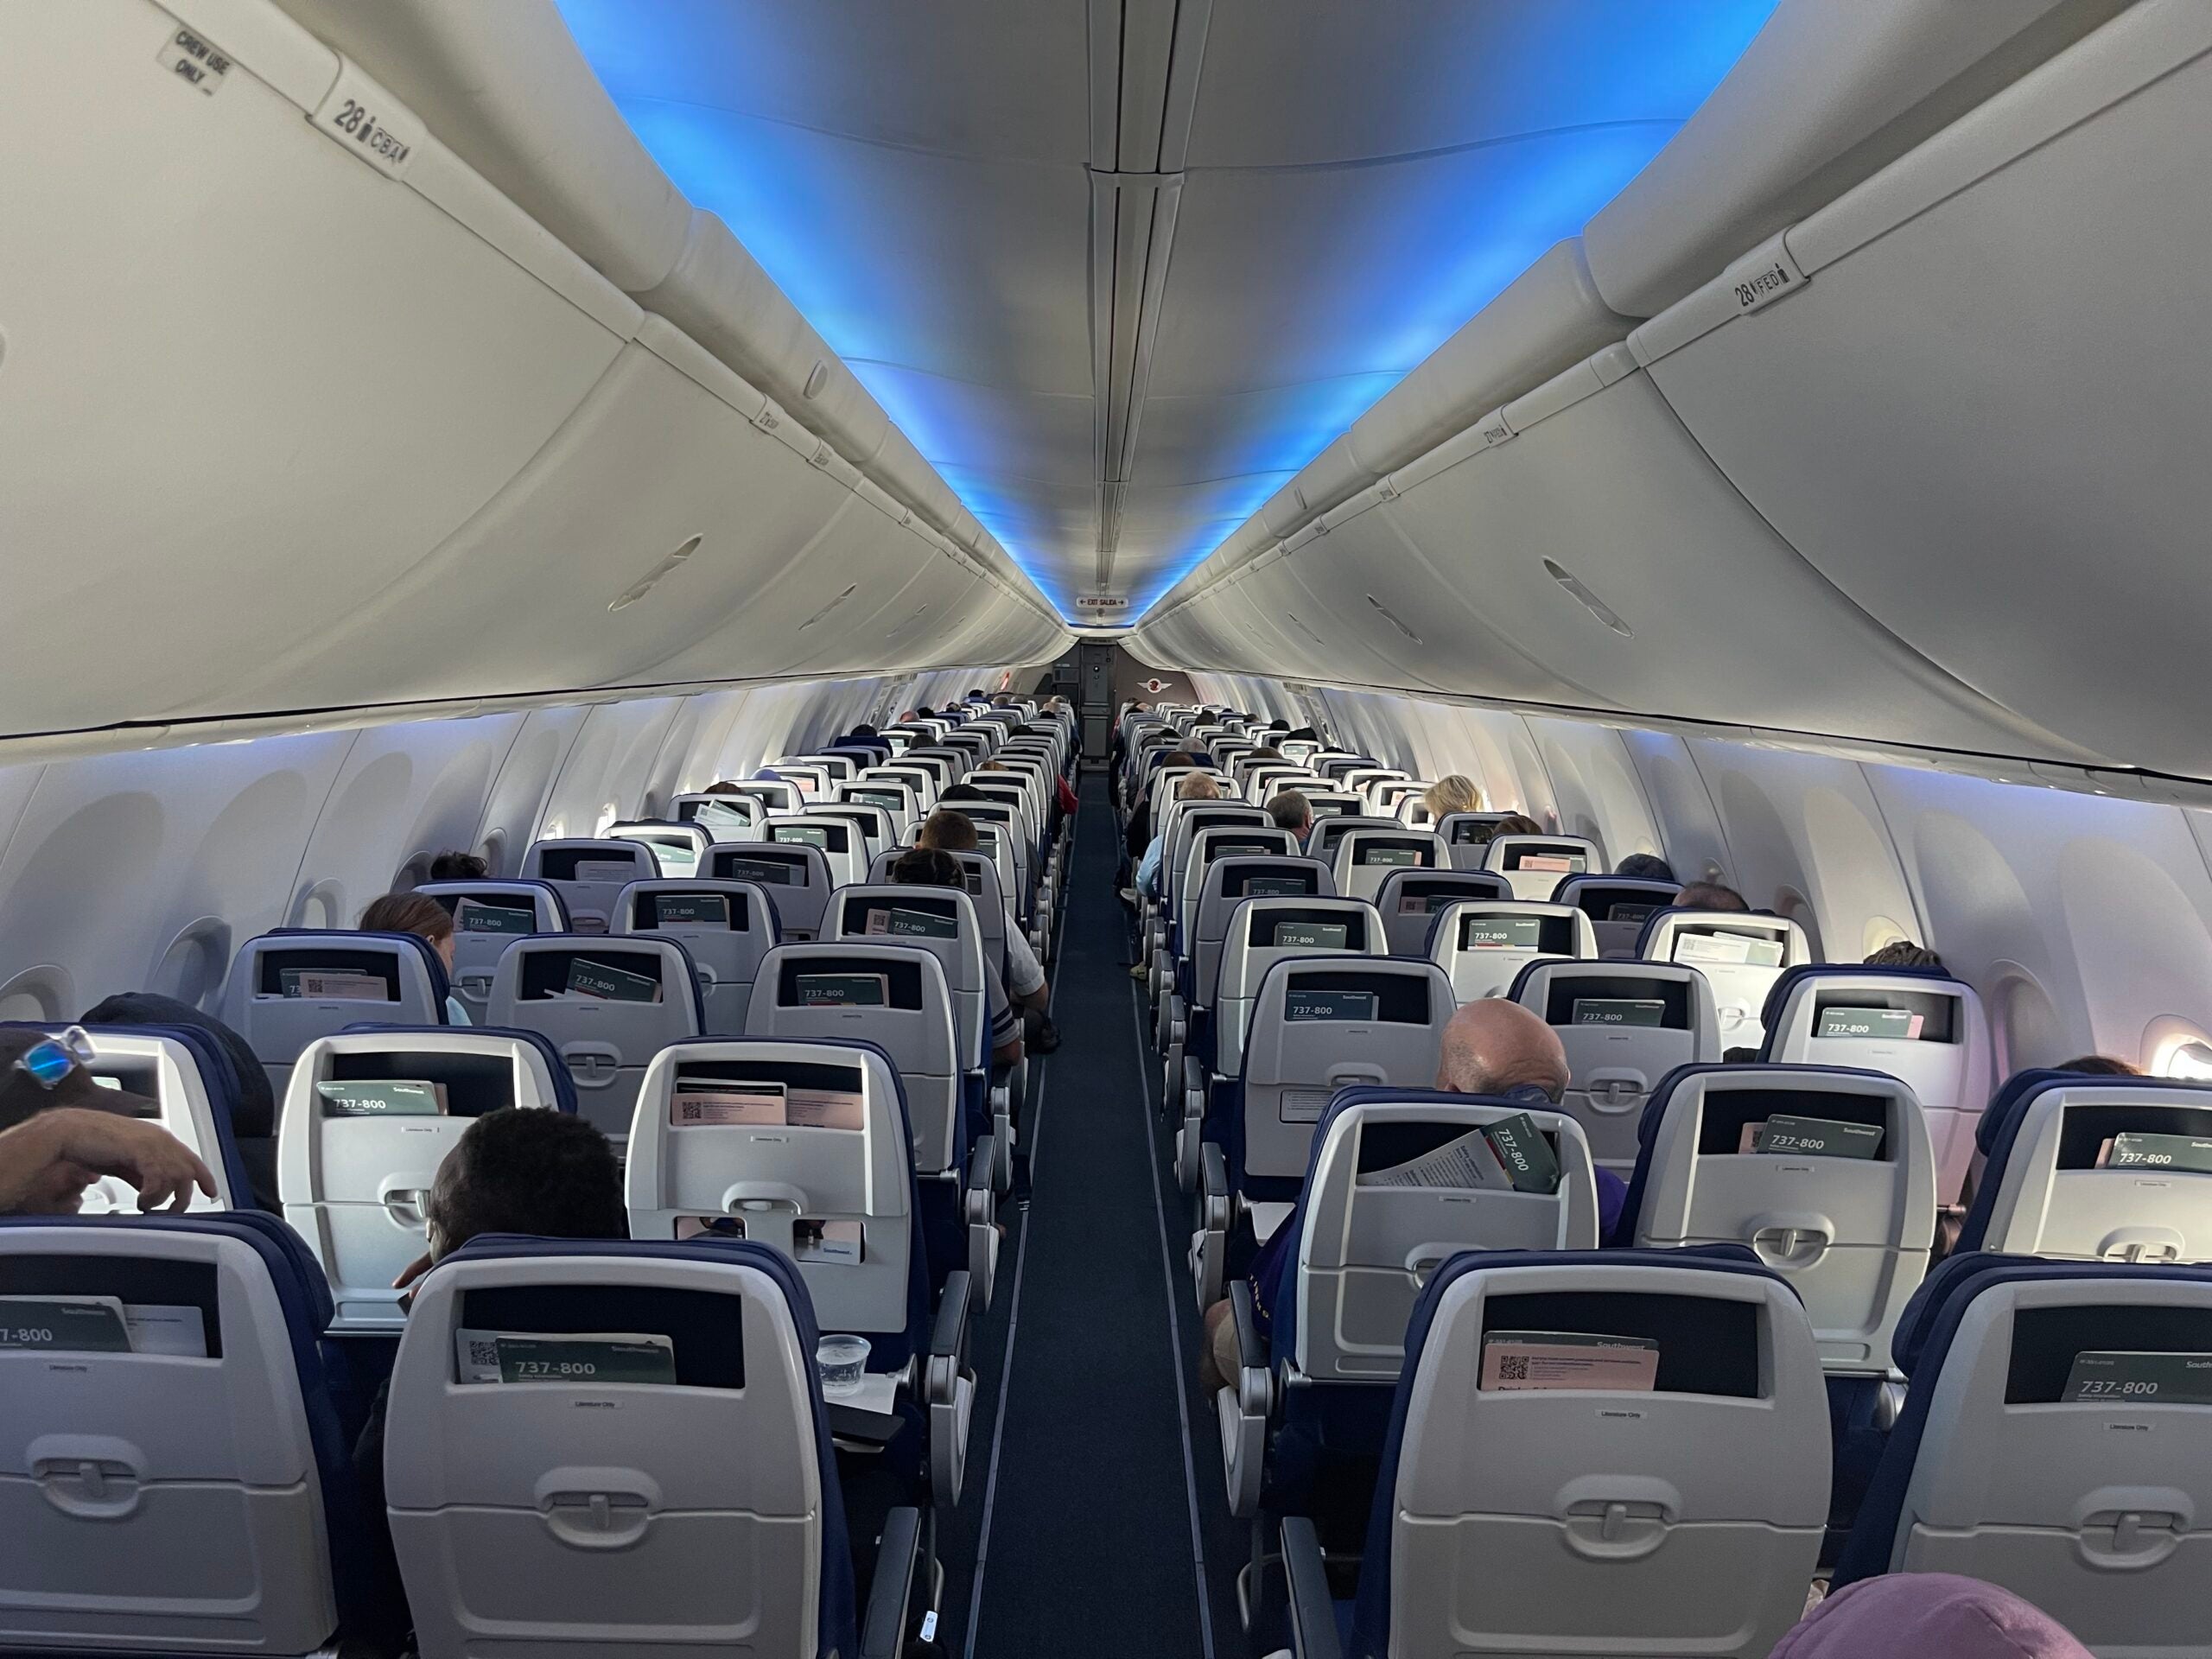 Southwest Boeing 737-800 rear interior